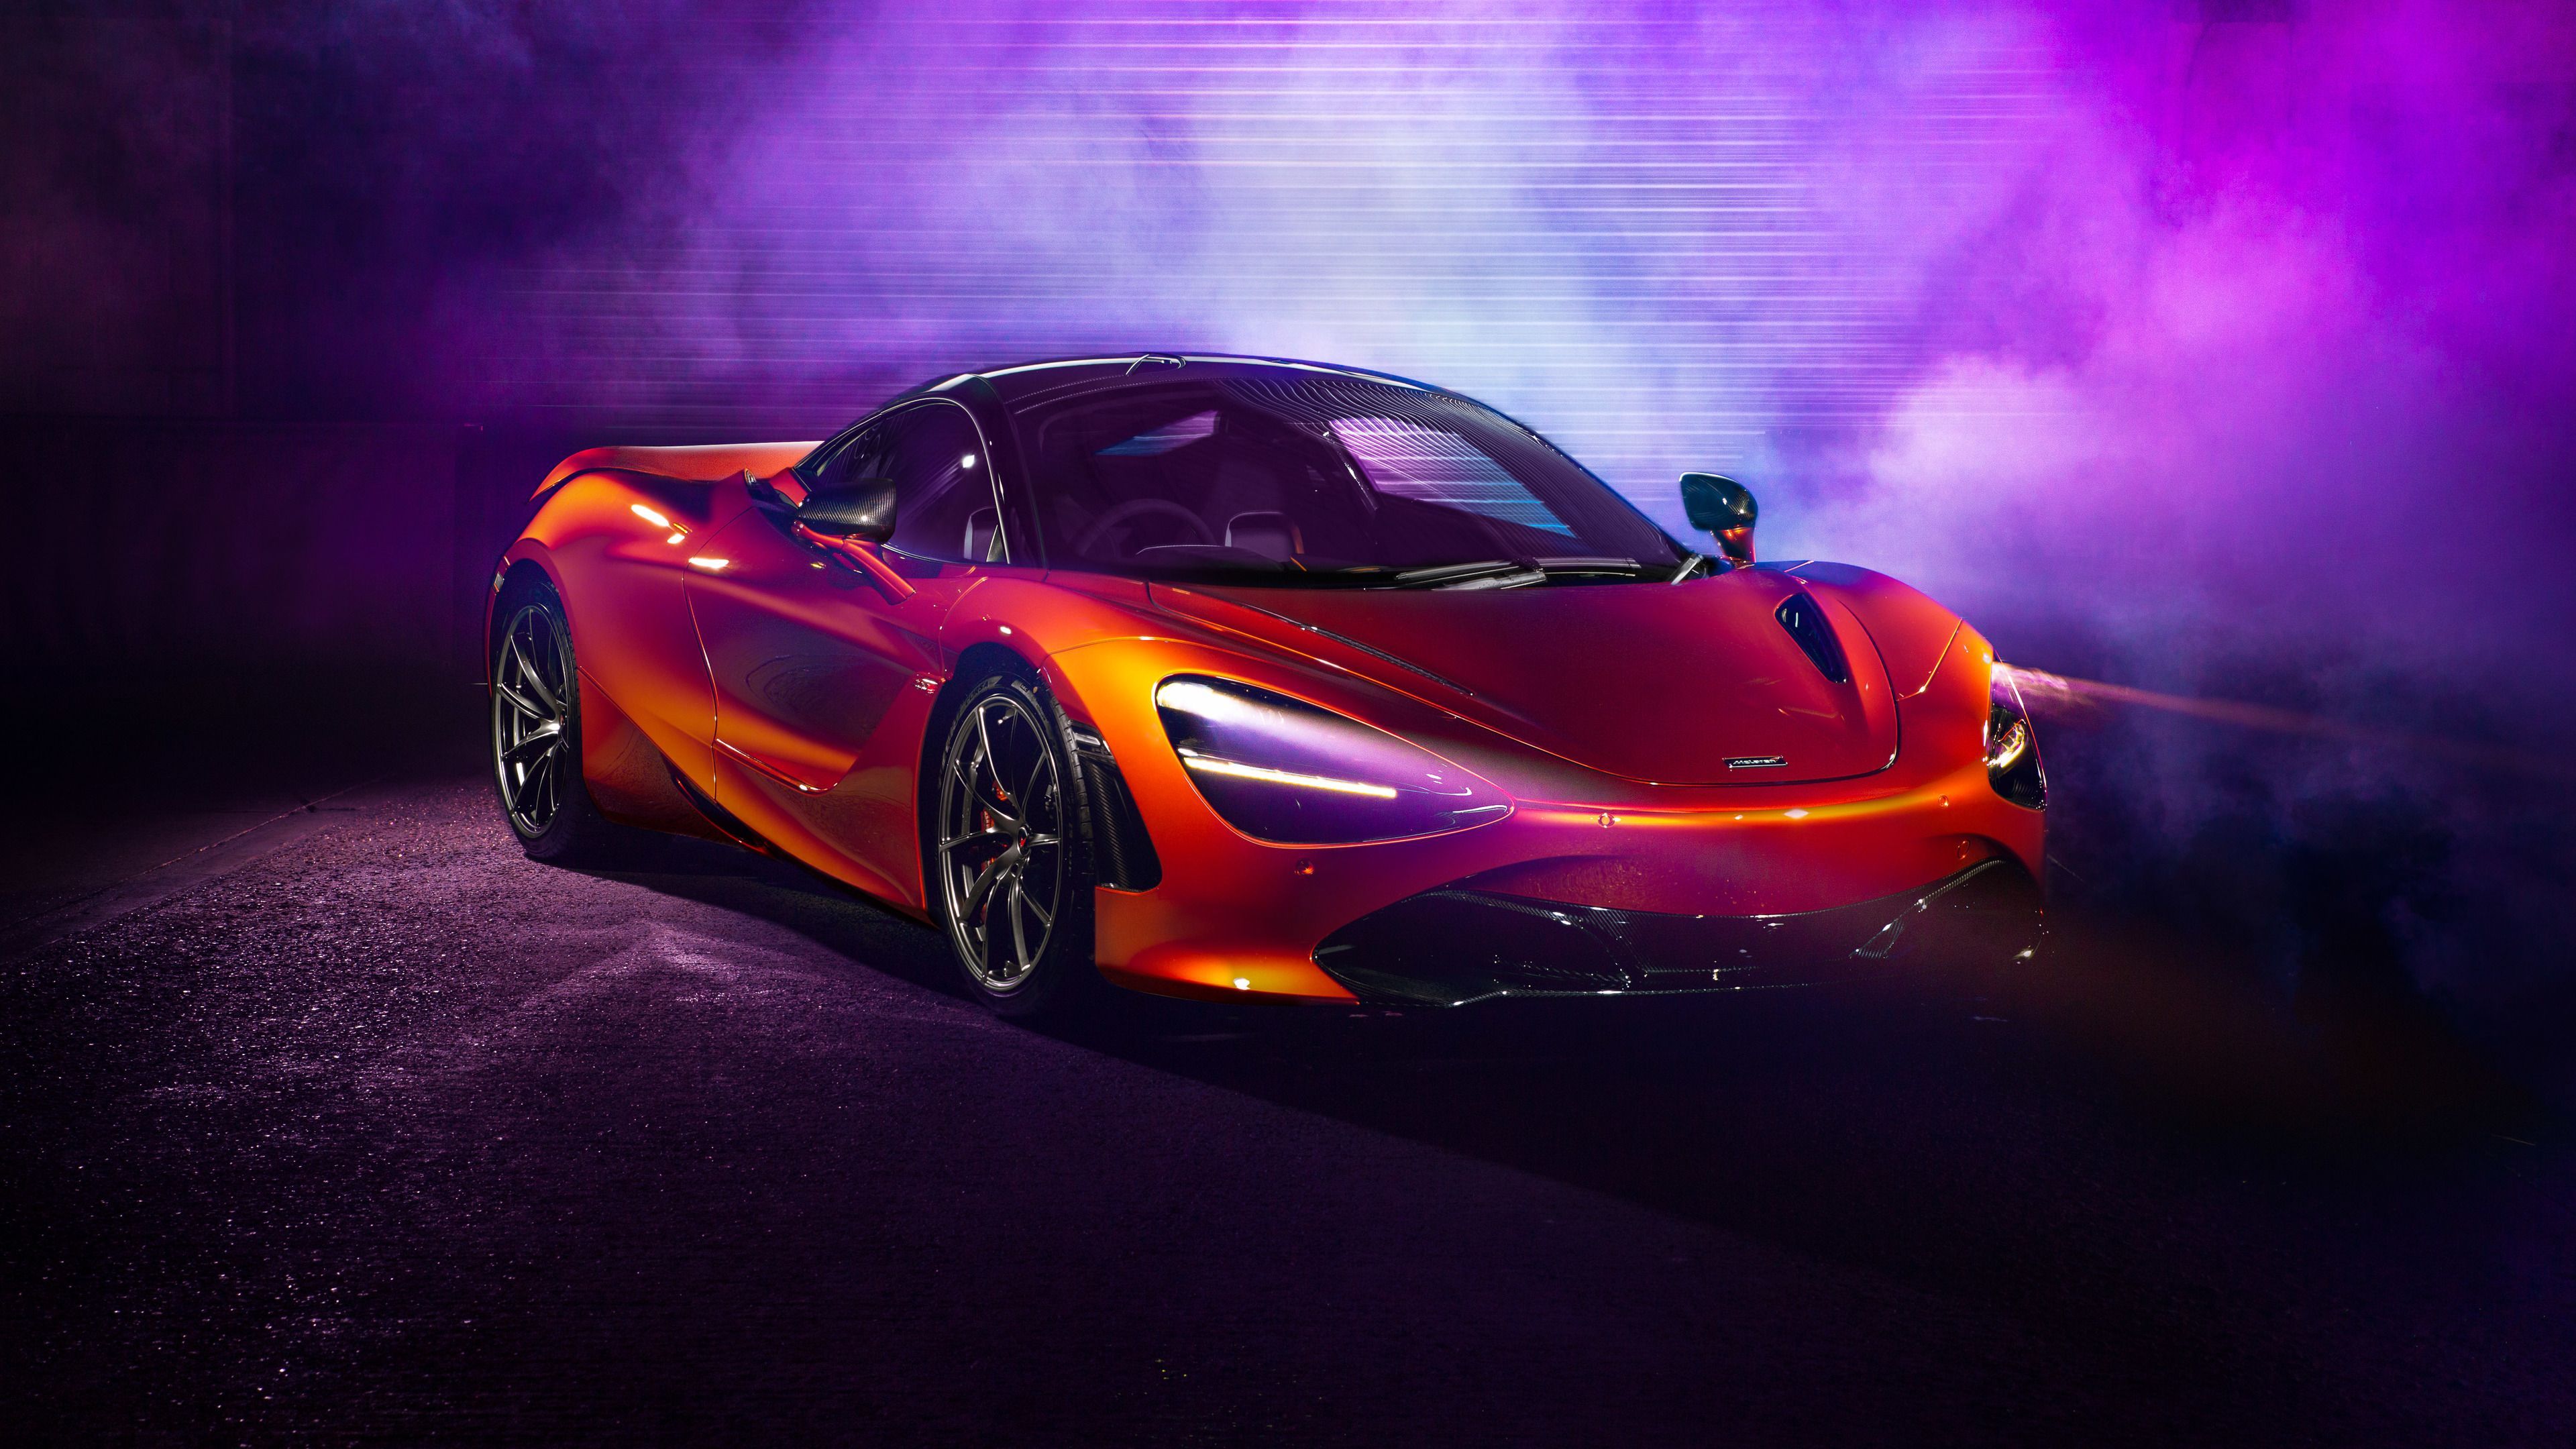 McLaren chính thức trình làng siêu xe 600LT nâng cấp từ 570S